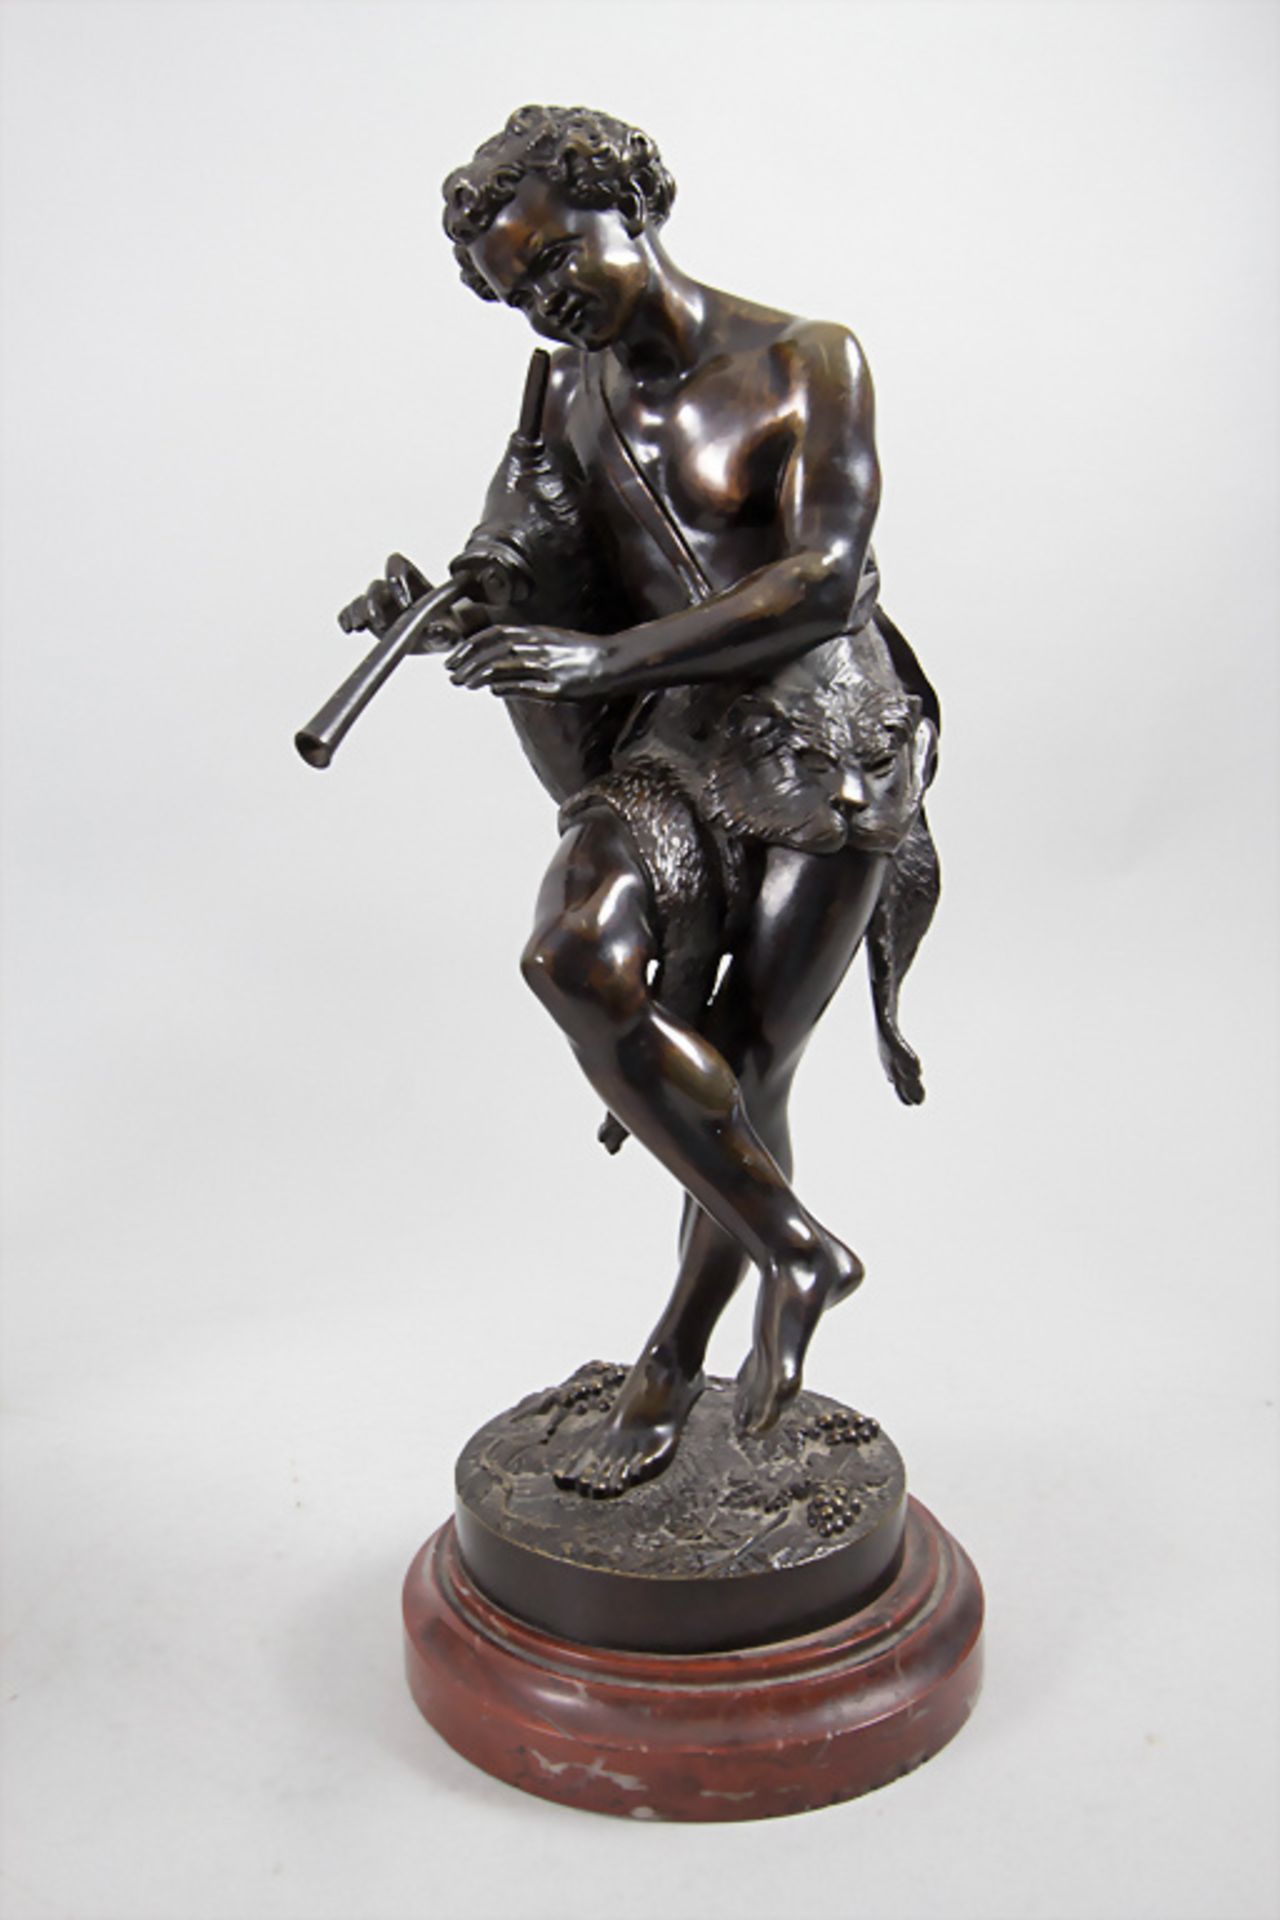 Bronzeskulptur 'Musizierender Hirte' / 'A music making shepherd', Frankreich, um 1860